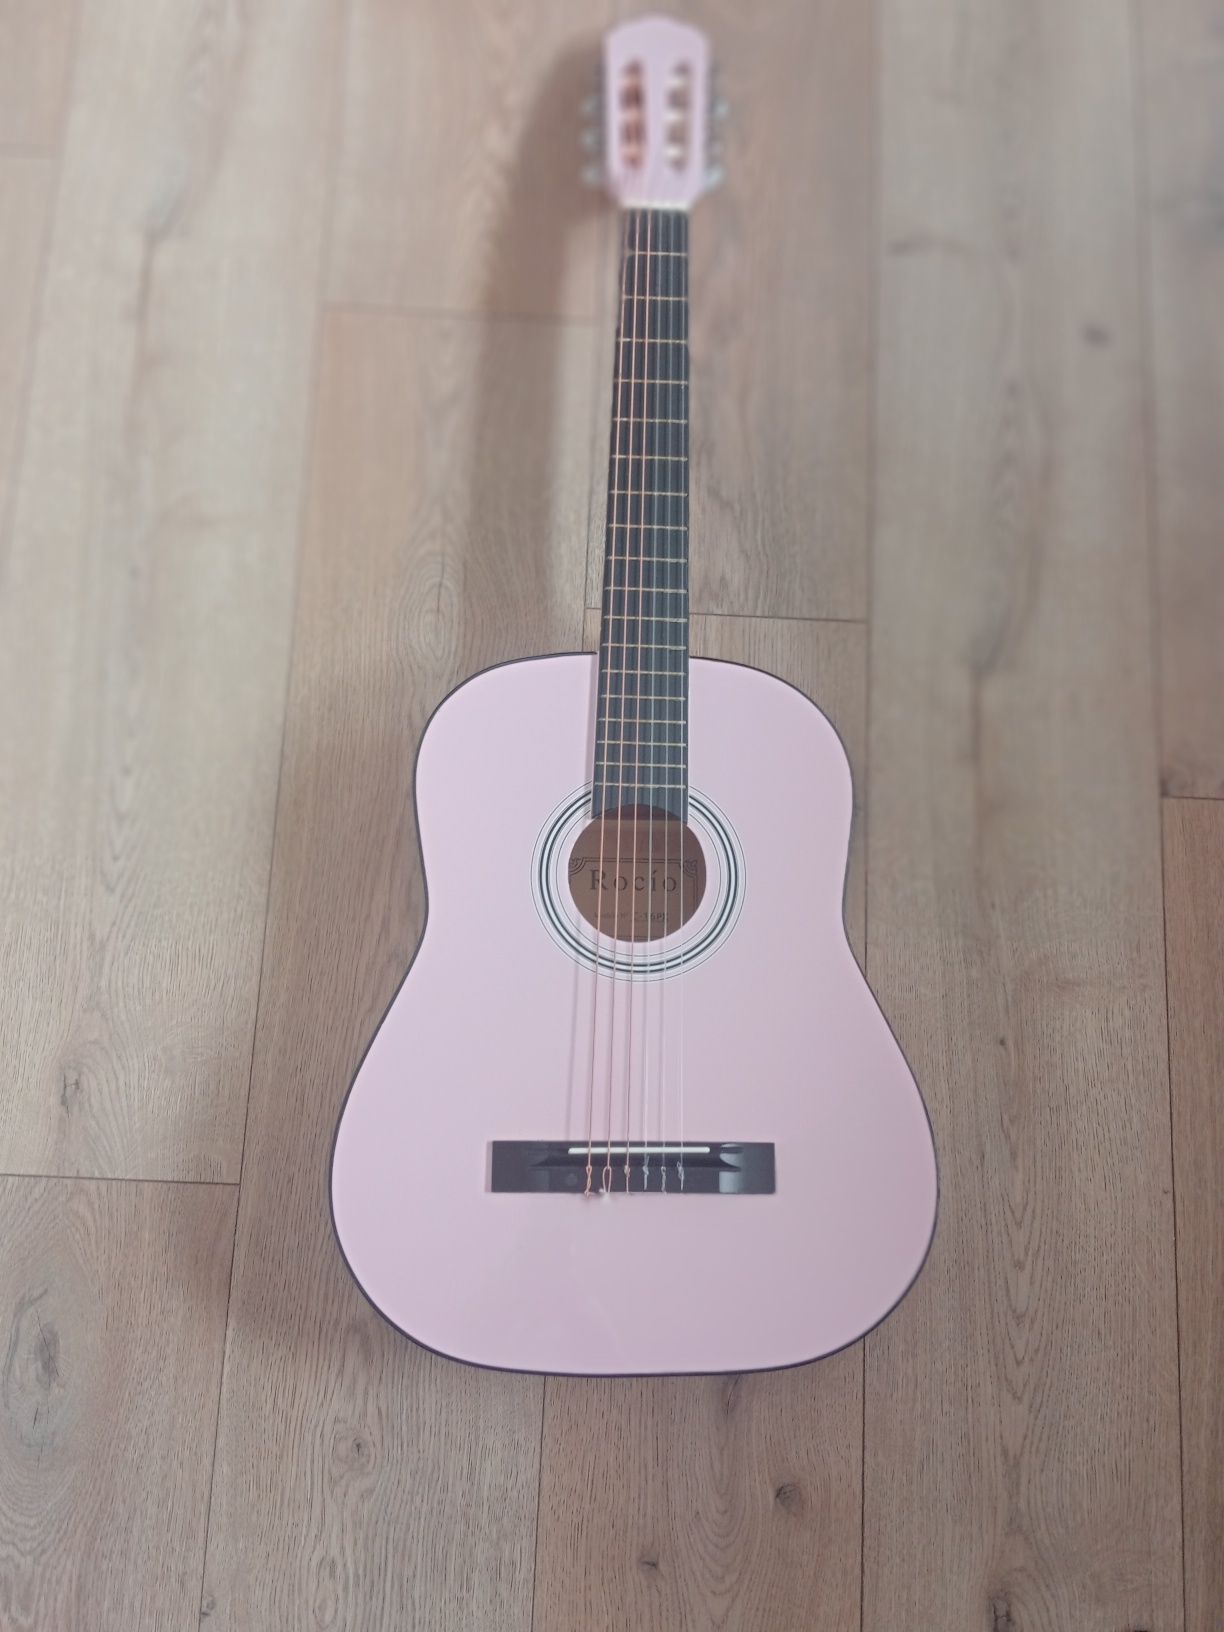 Jest to różowa gitara